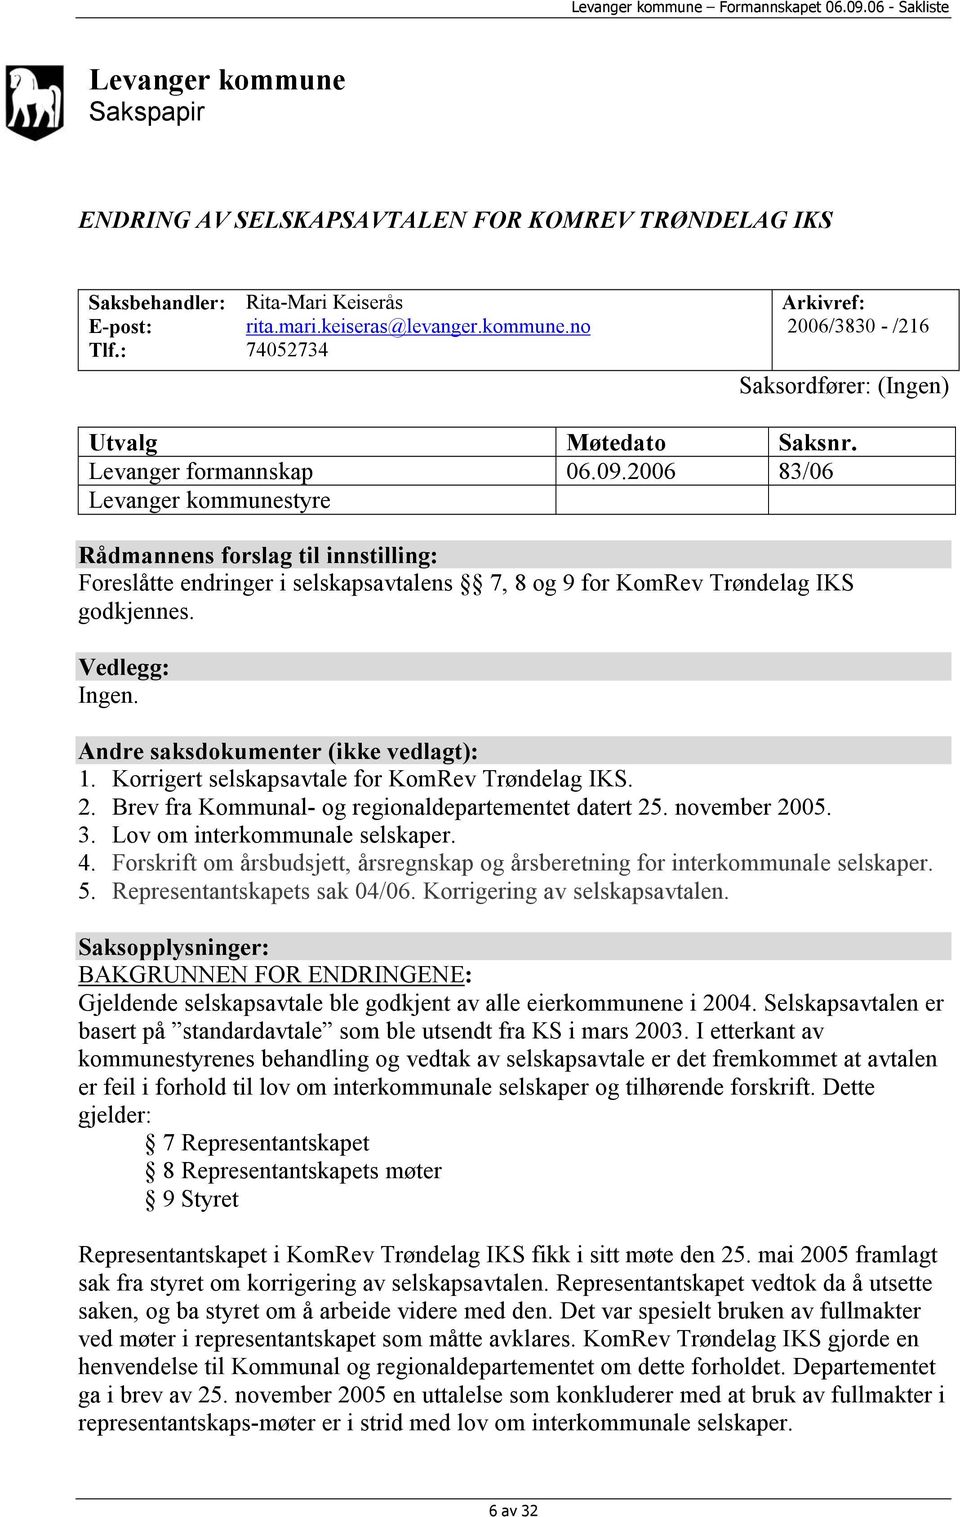 Andre saksdokumenter (ikke vedlagt): 1. Korrigert selskapsavtale for KomRev Trøndelag IKS. 2. Brev fra Kommunal- og regionaldepartementet datert 25. november 2005. 3. Lov om interkommunale selskaper.